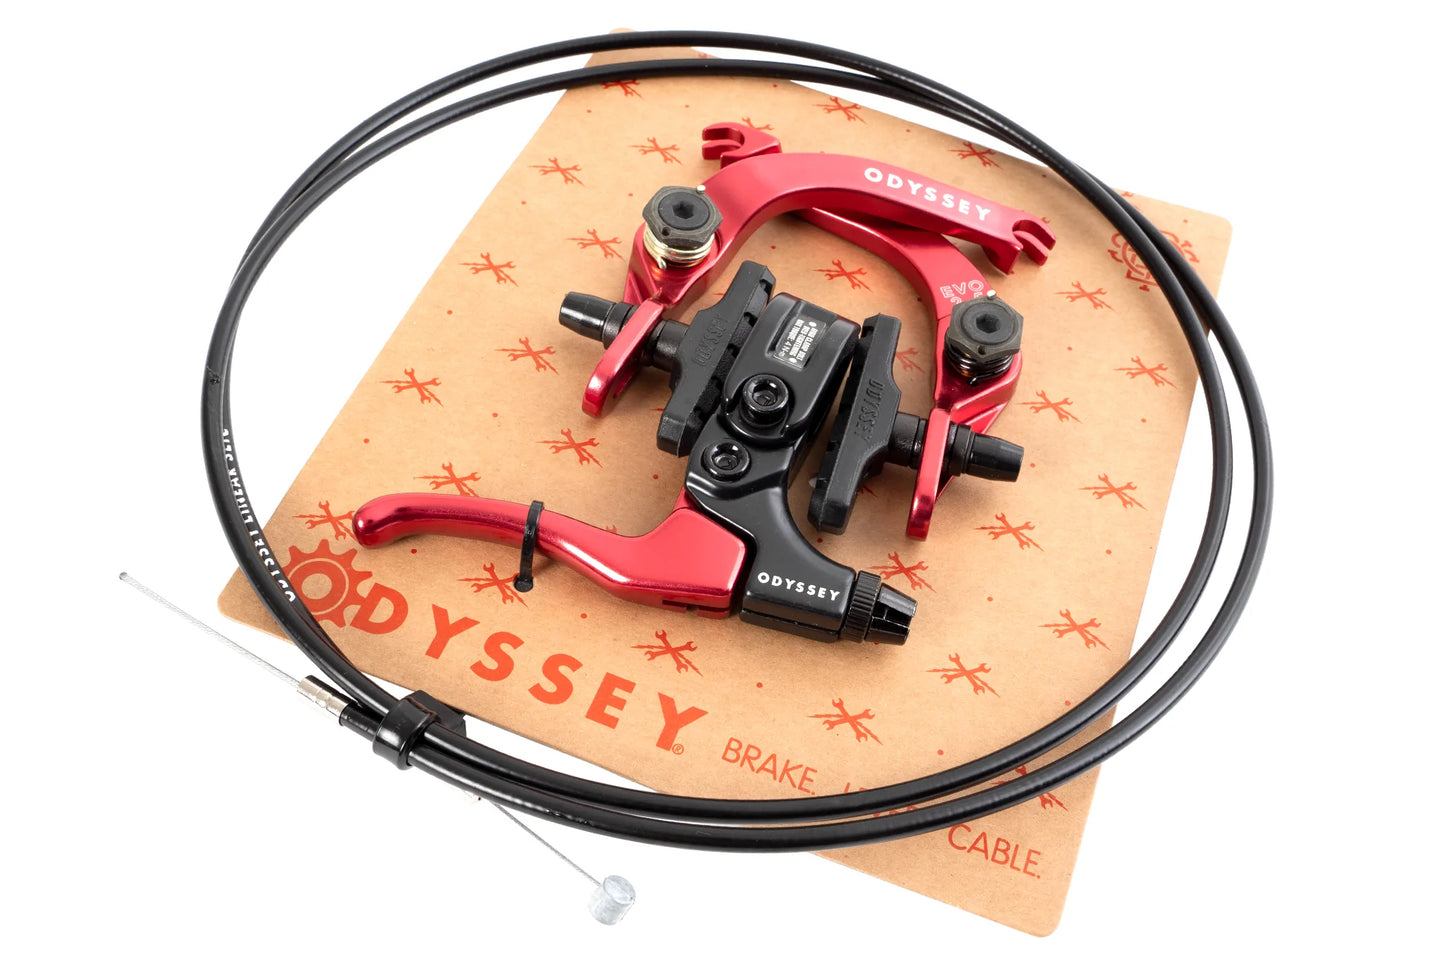 Odyssey evo 2.5 brake kit